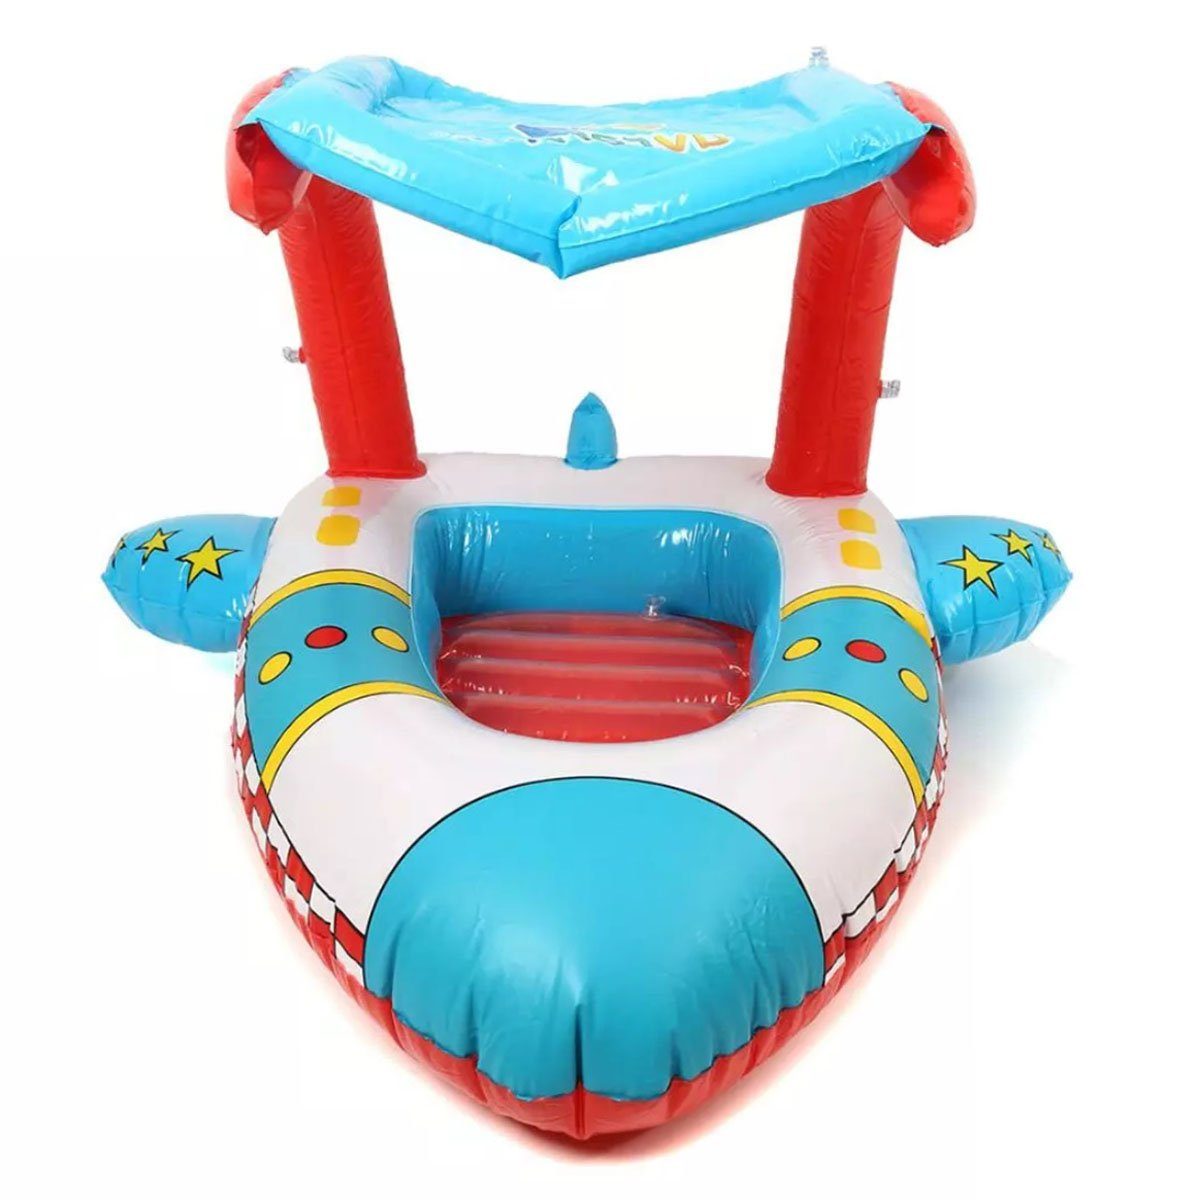 Schwimmsitz Kinder Babyboot aufblasbar Sonnenschutz Schwimmring Schwimmhilfe 